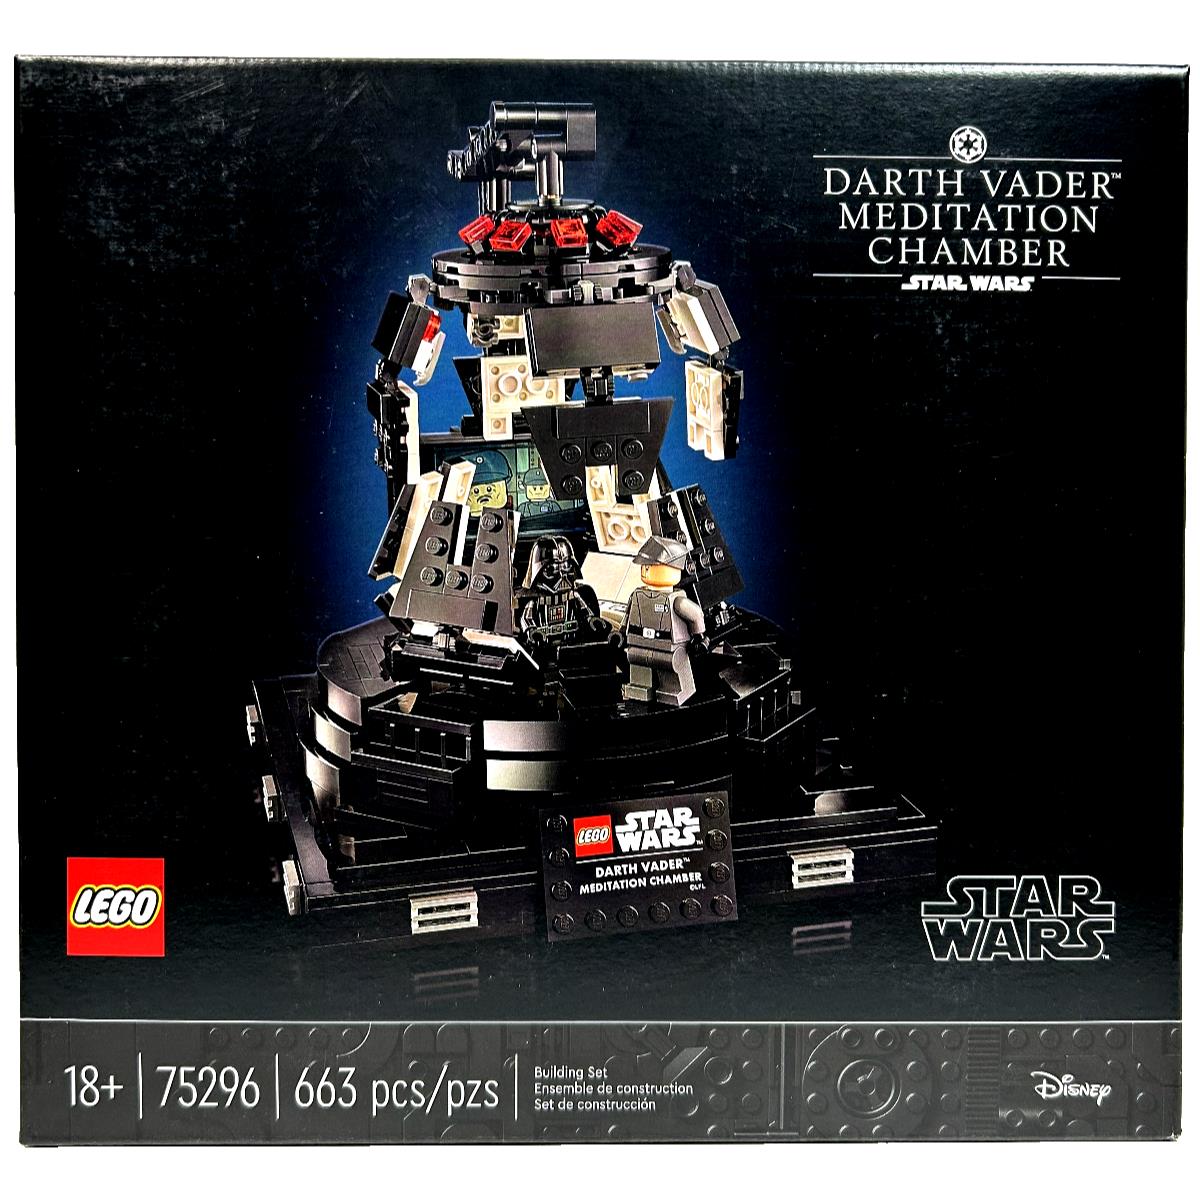 Meditation Chamber Darth Vader Lego Star Wars 75296